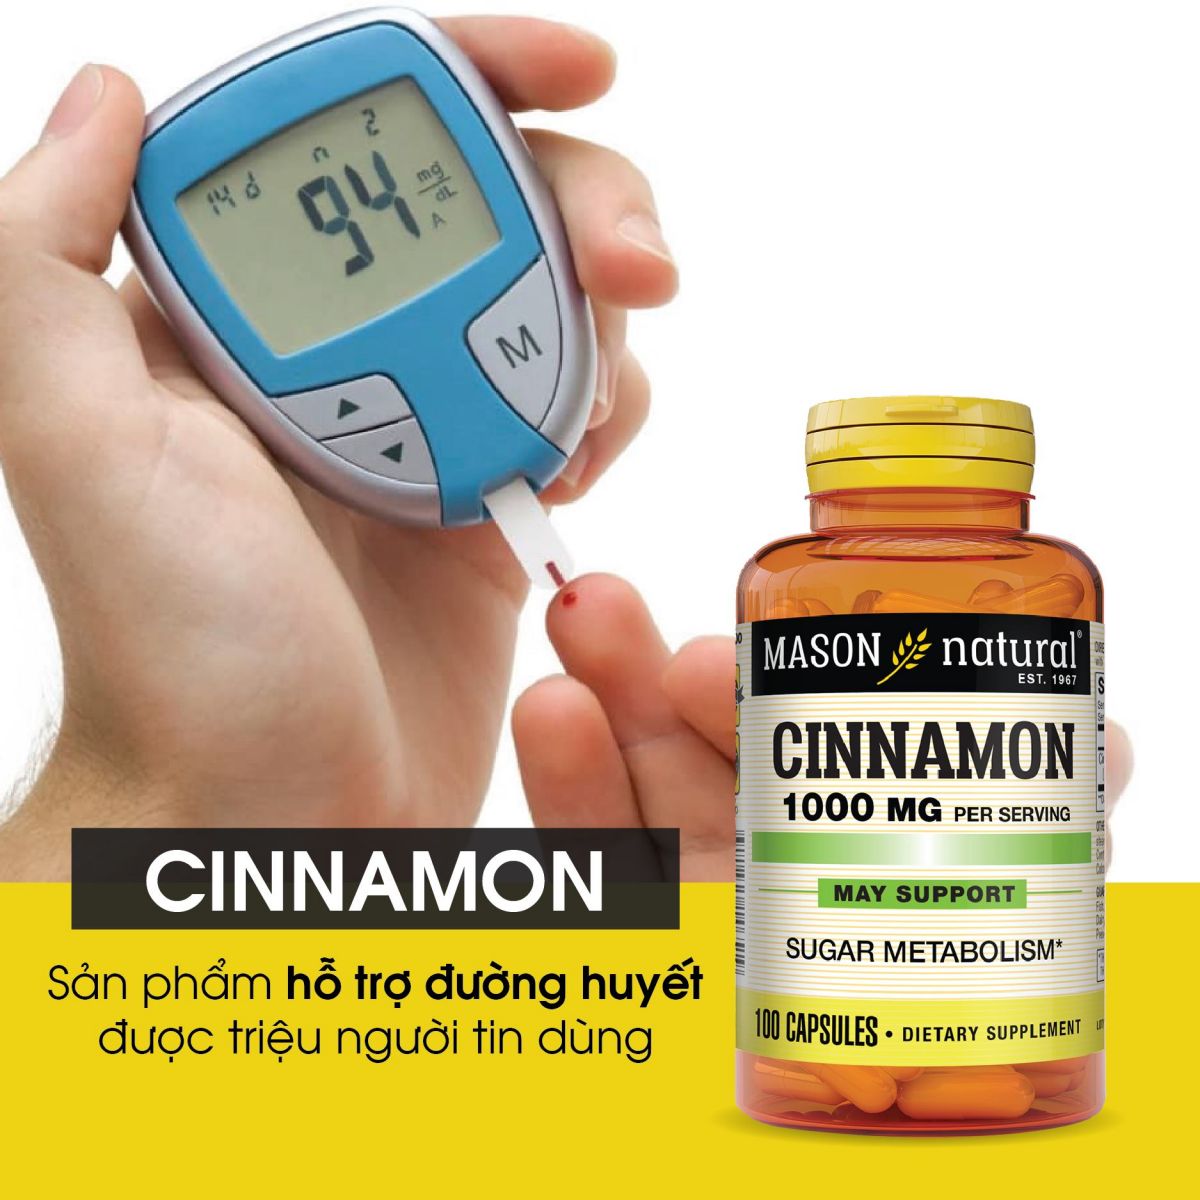 Cinnamon 1000mg là sản phẩm hỗ trợ điều trị tiểu đường được sản xuất bởi Mason Natural